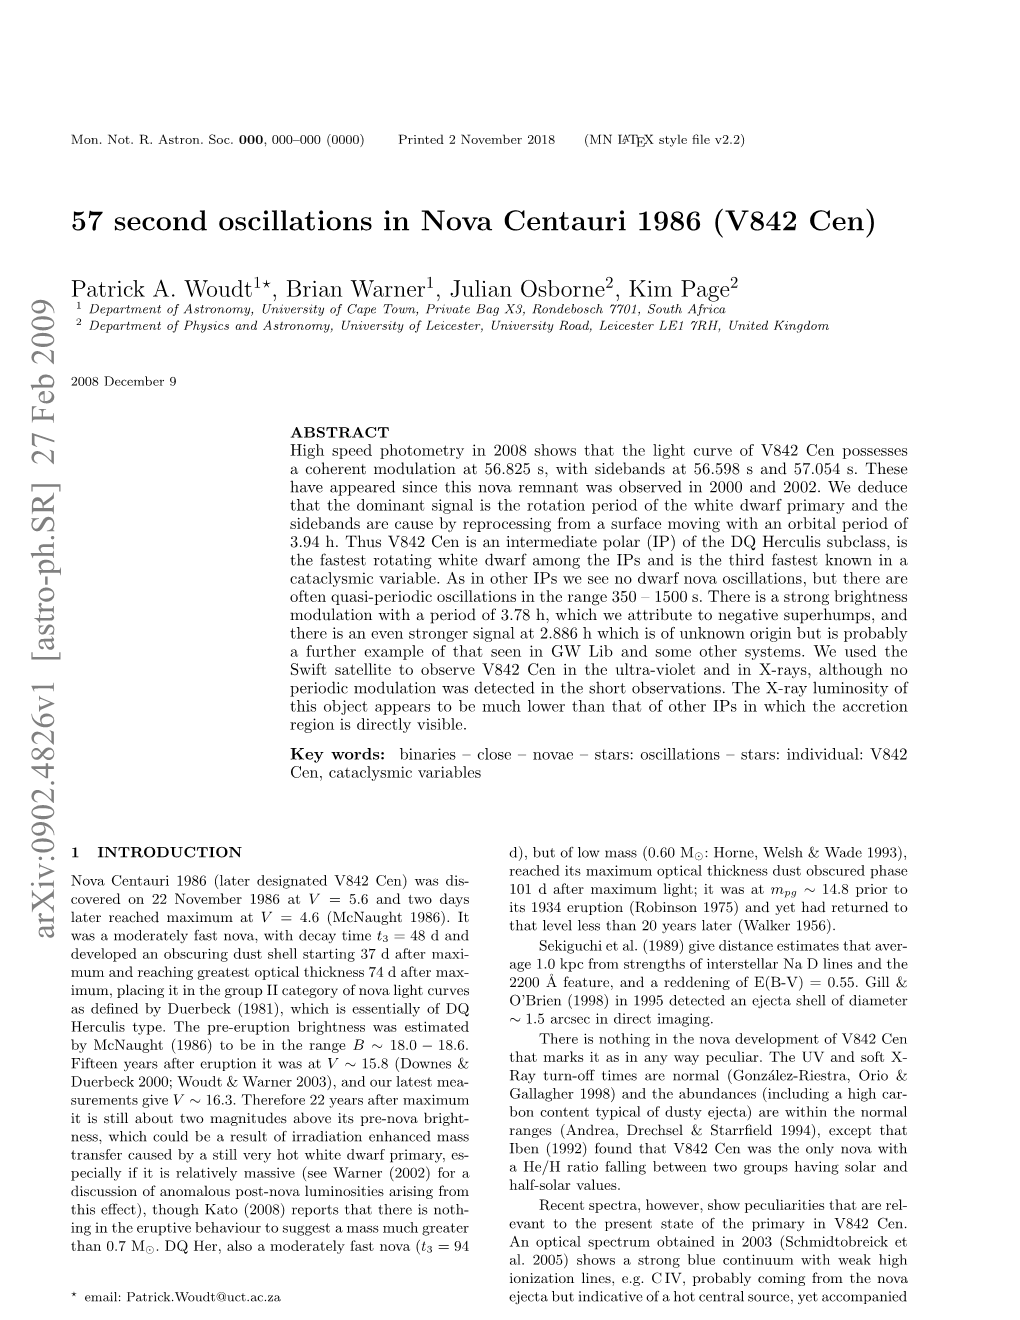 57 Second Oscillations in Nova Centauri 1986 (V842 Cen) 3